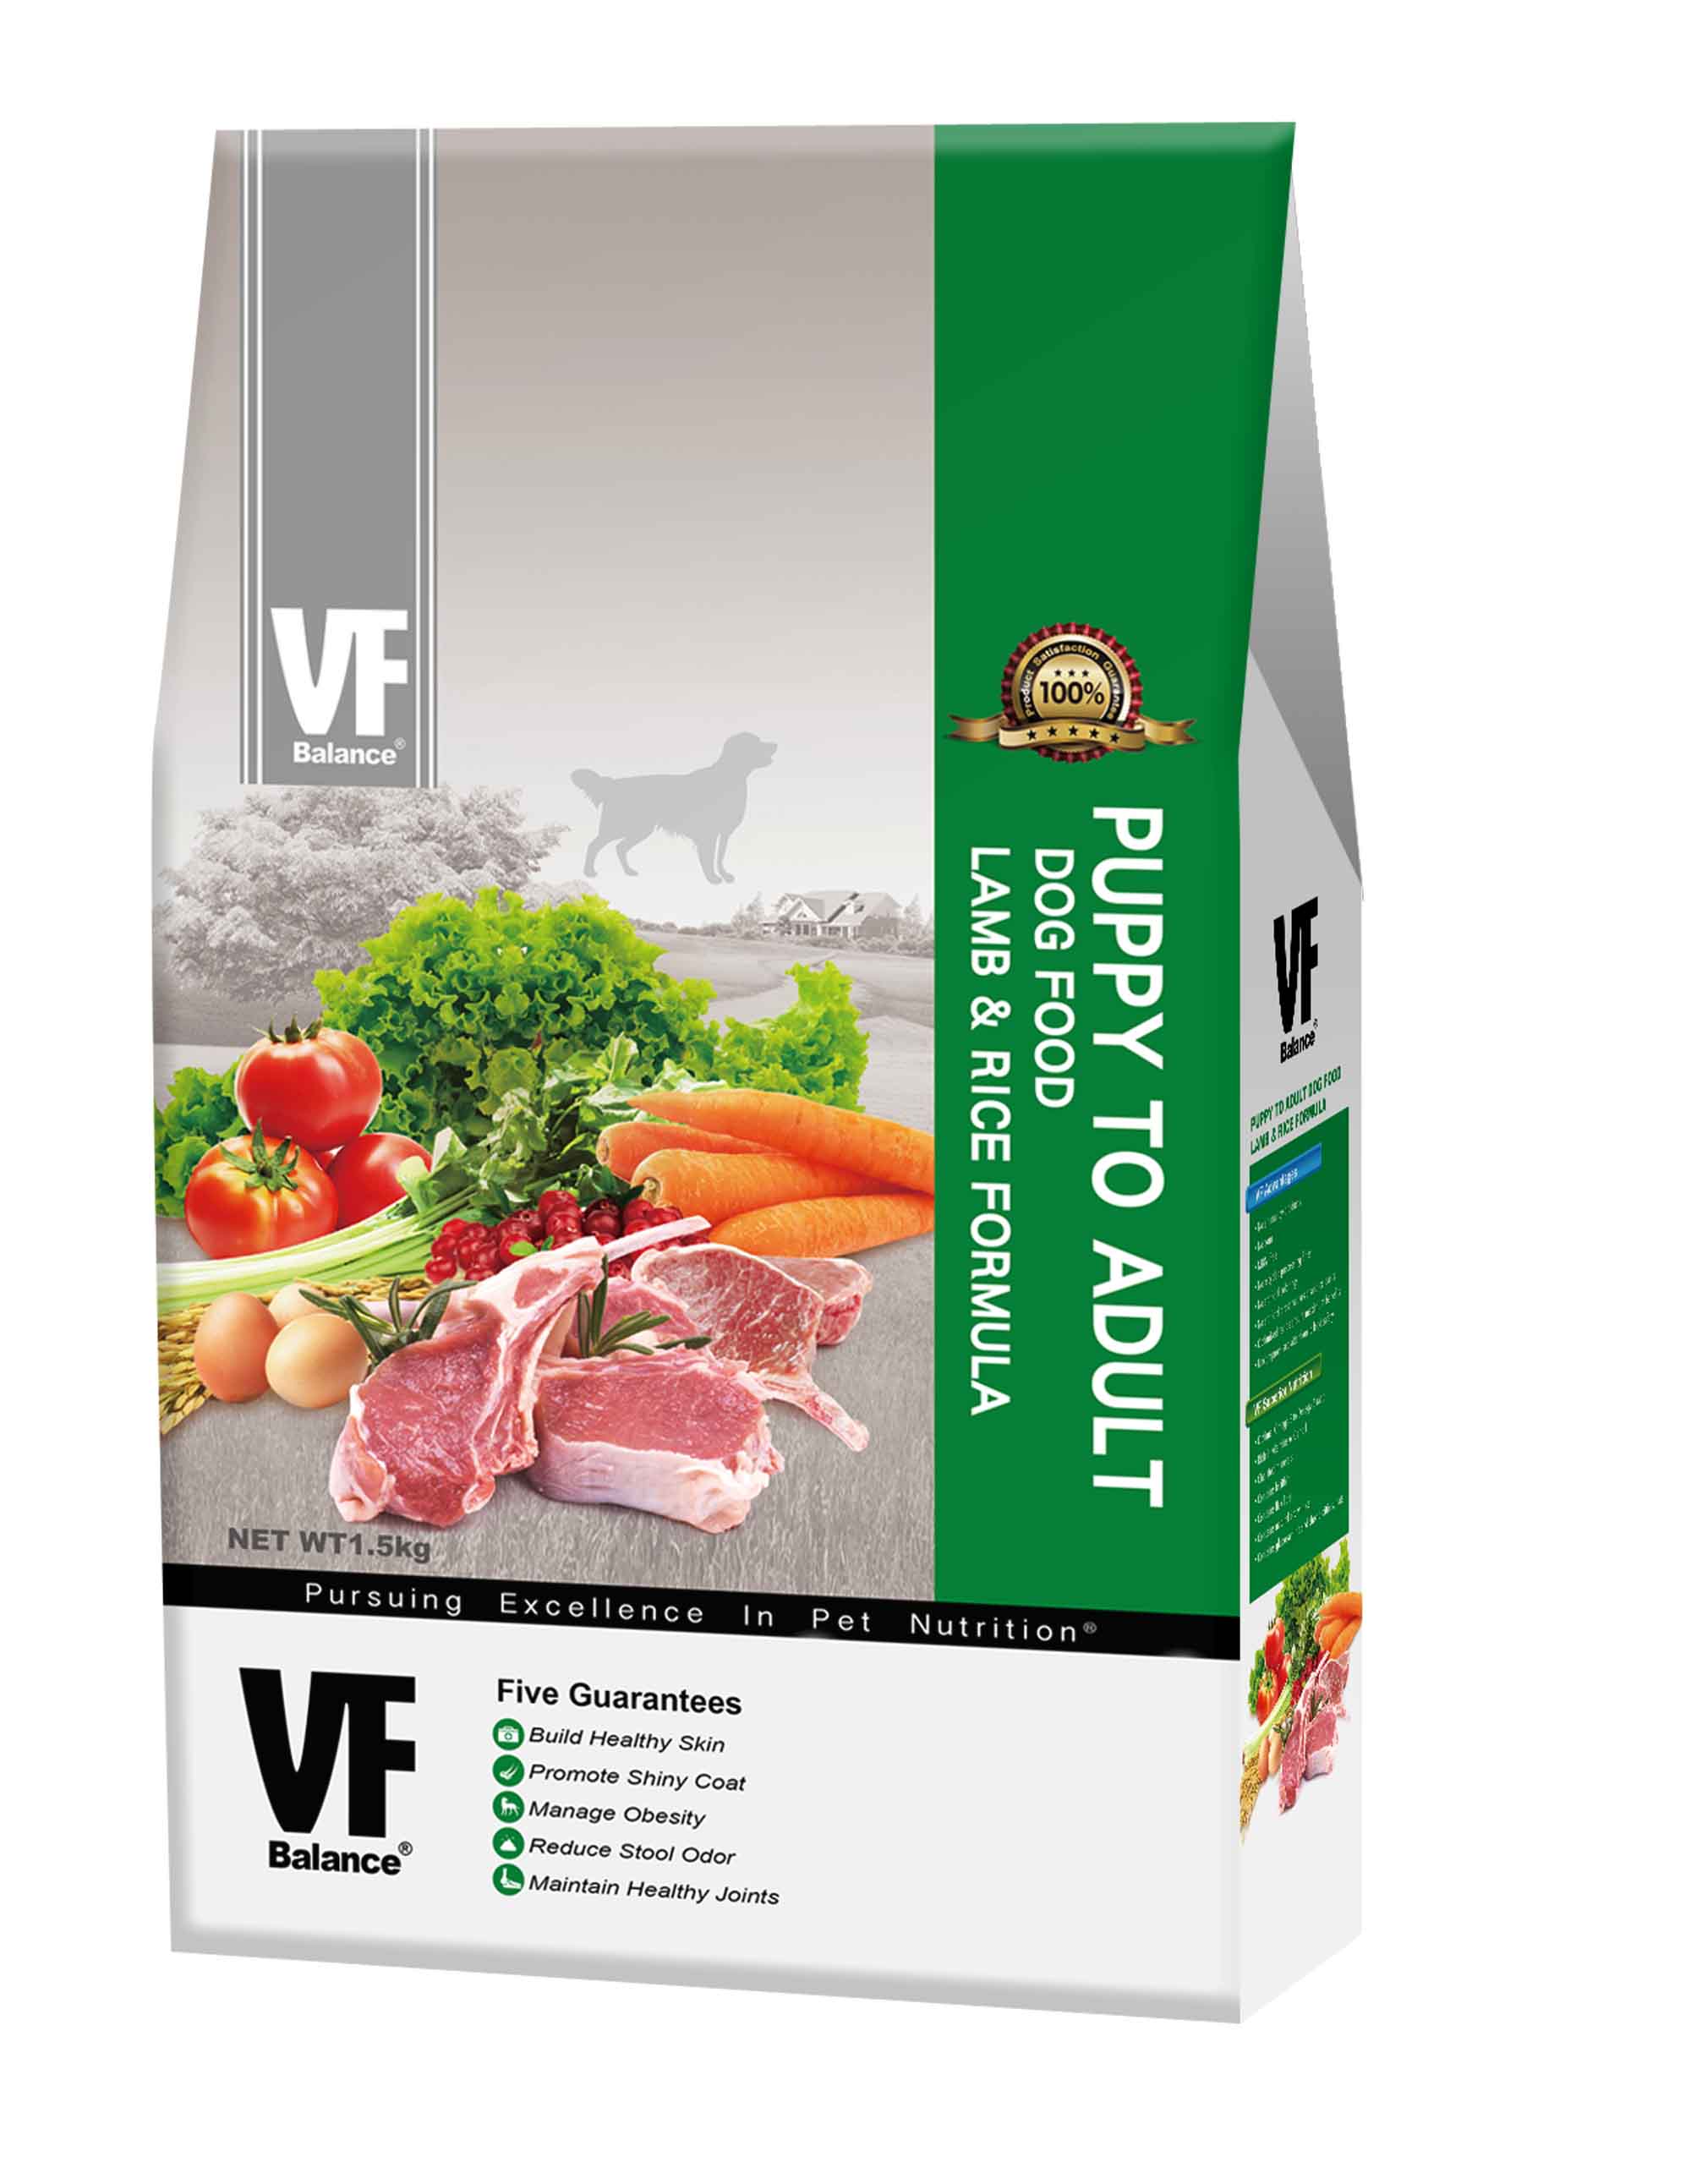 魏大夫低敏亮毛配方(羊肉+米)
VF Puppy to Adult Dog Food Lamb & Rice Formula